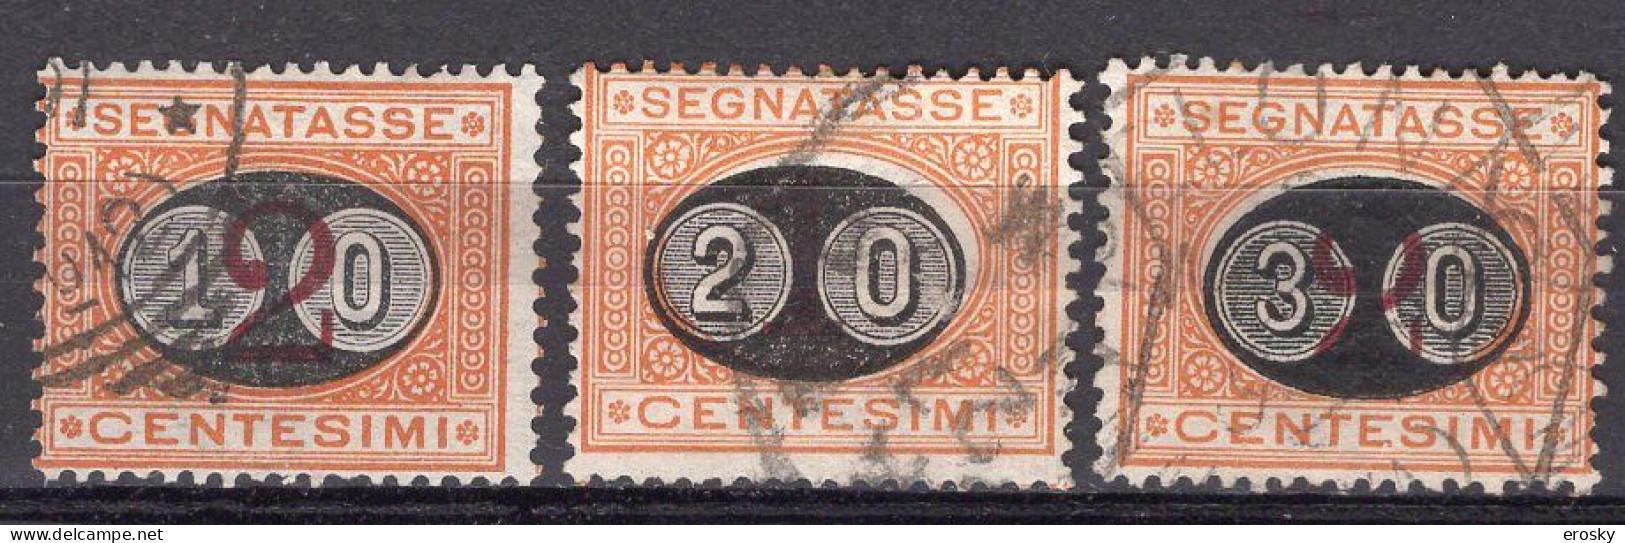 Z6140 - ITALIA REGNO TASSE SASSONE N°17/19 - Segnatasse